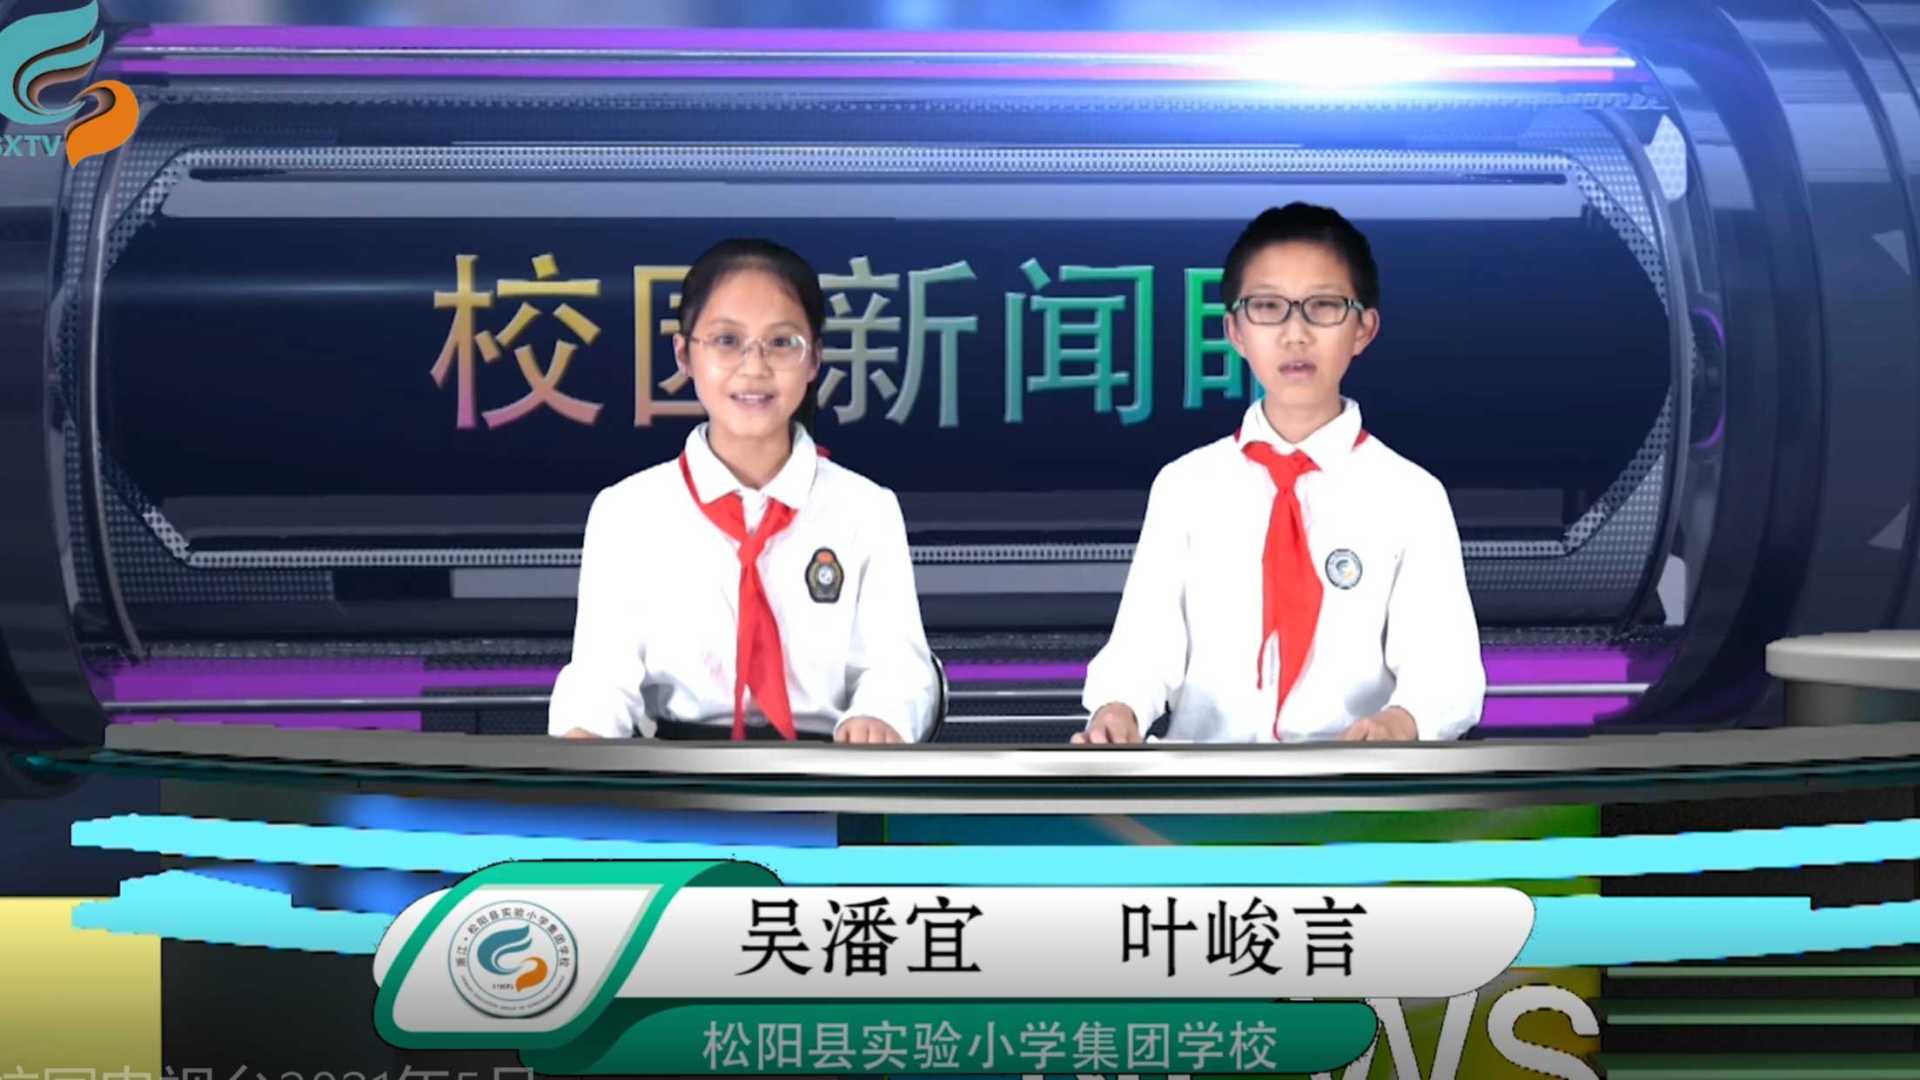 松阳县实验小学集团学校校园电视台2021年5月节目